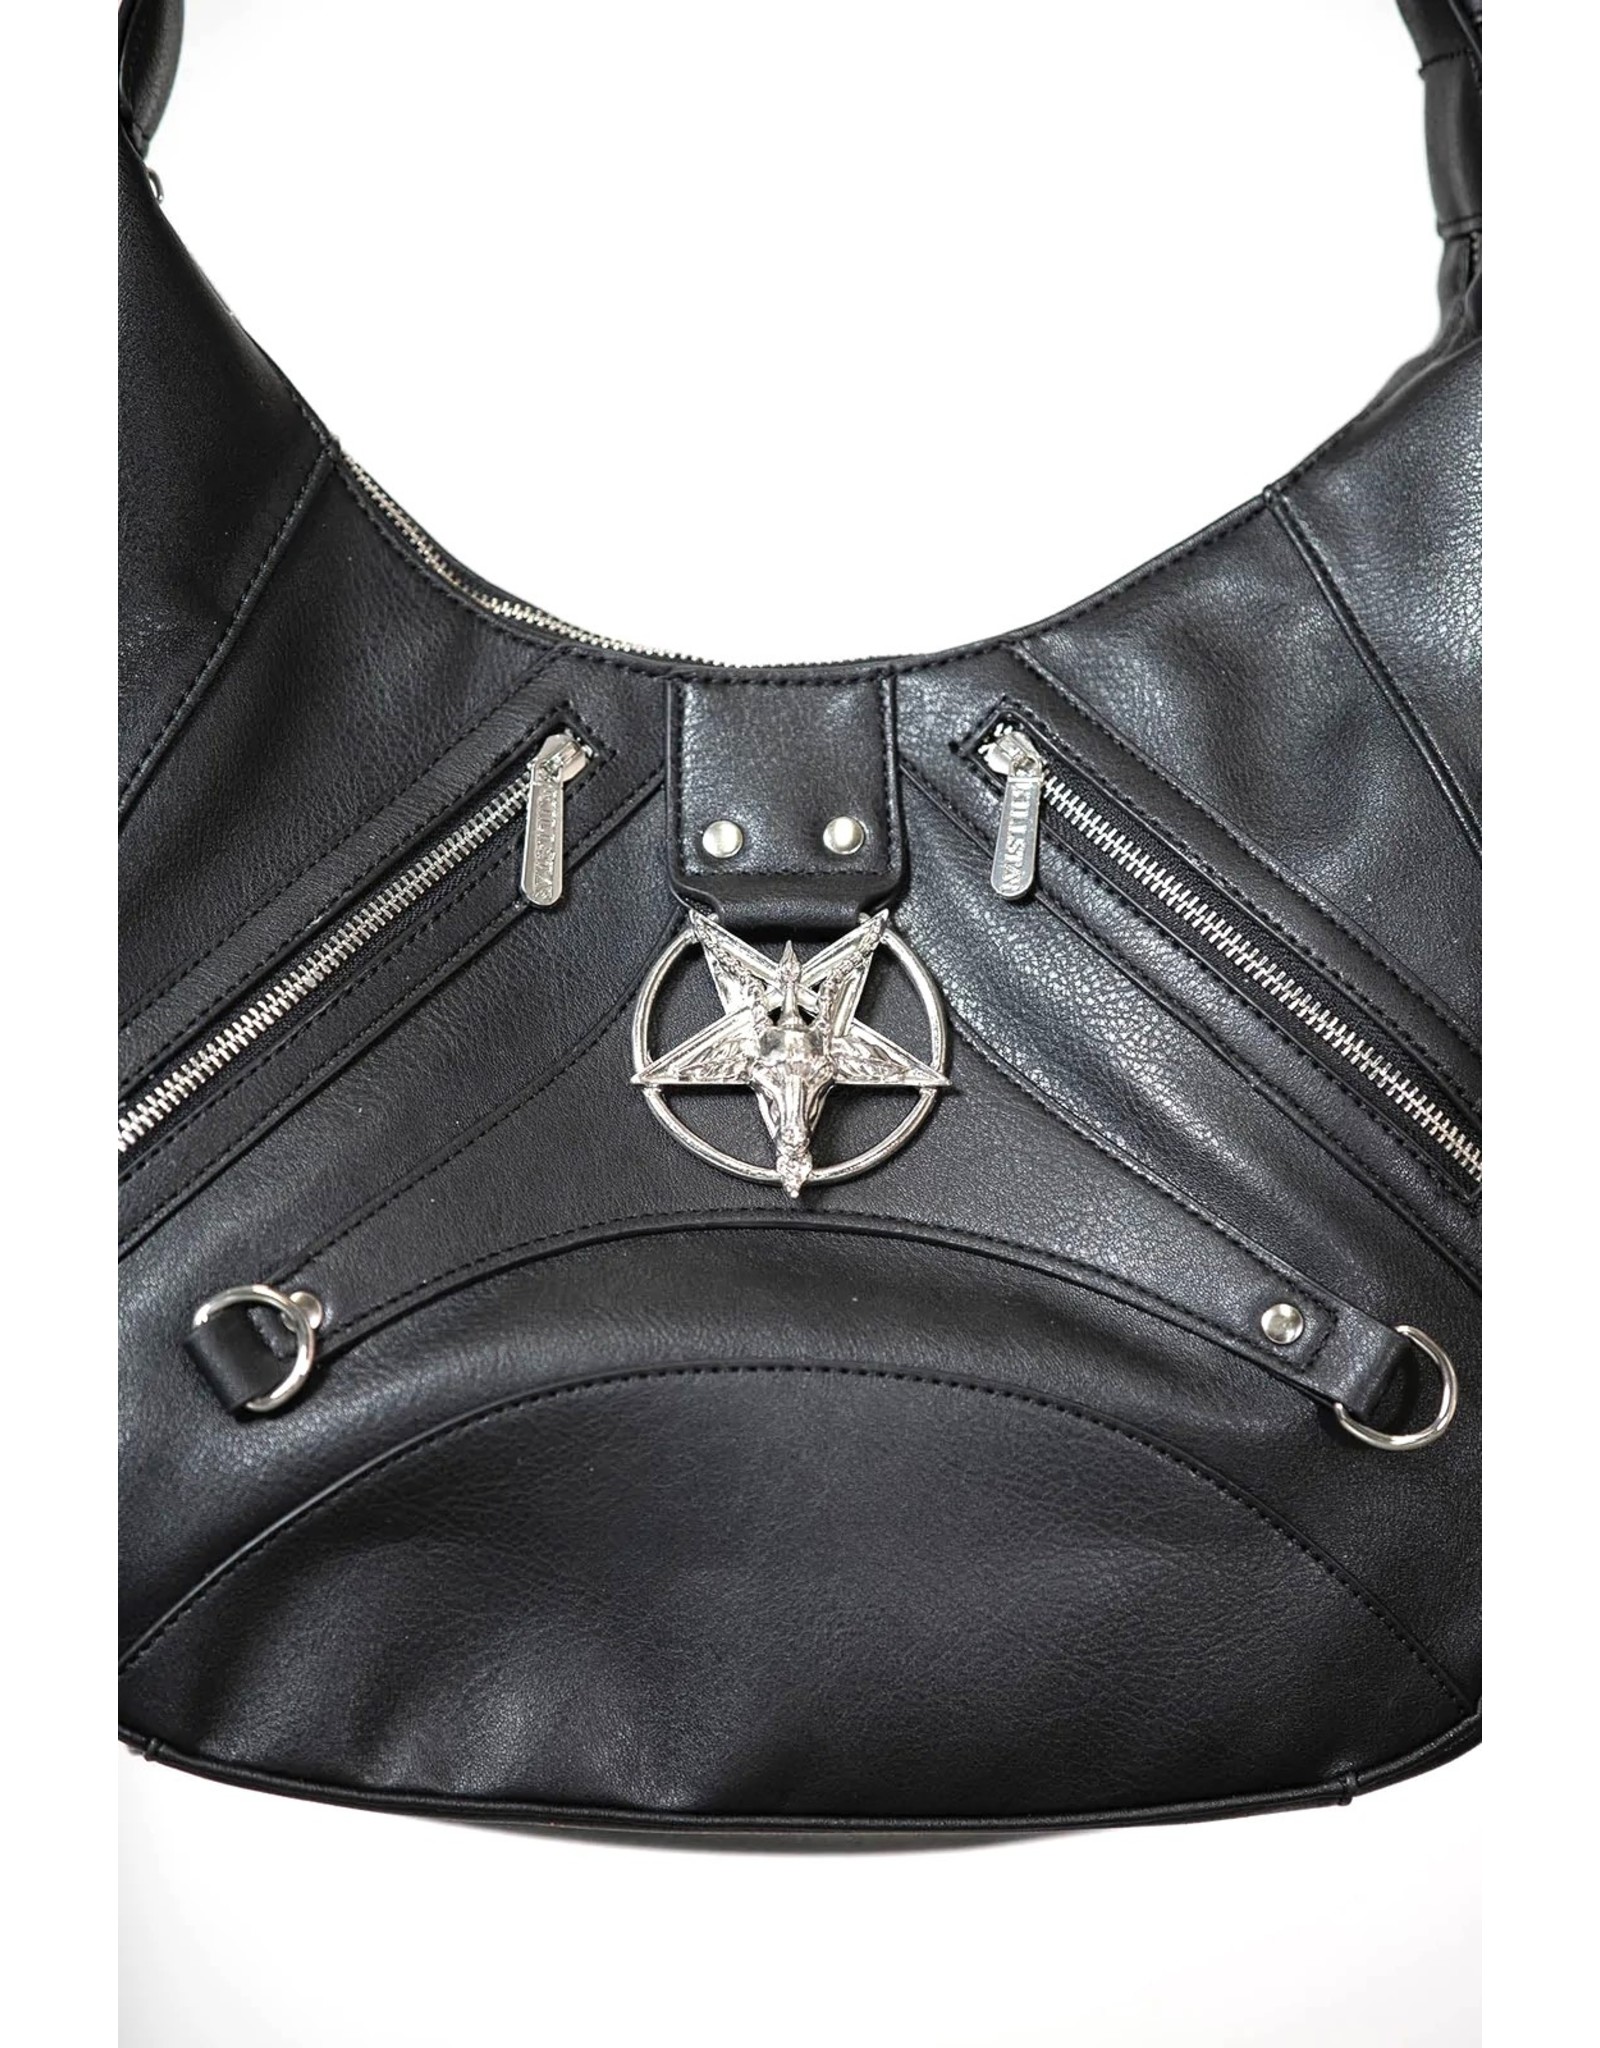 Killstar Gothic Bags Steampunk Bags - Killstar Misfit handbag